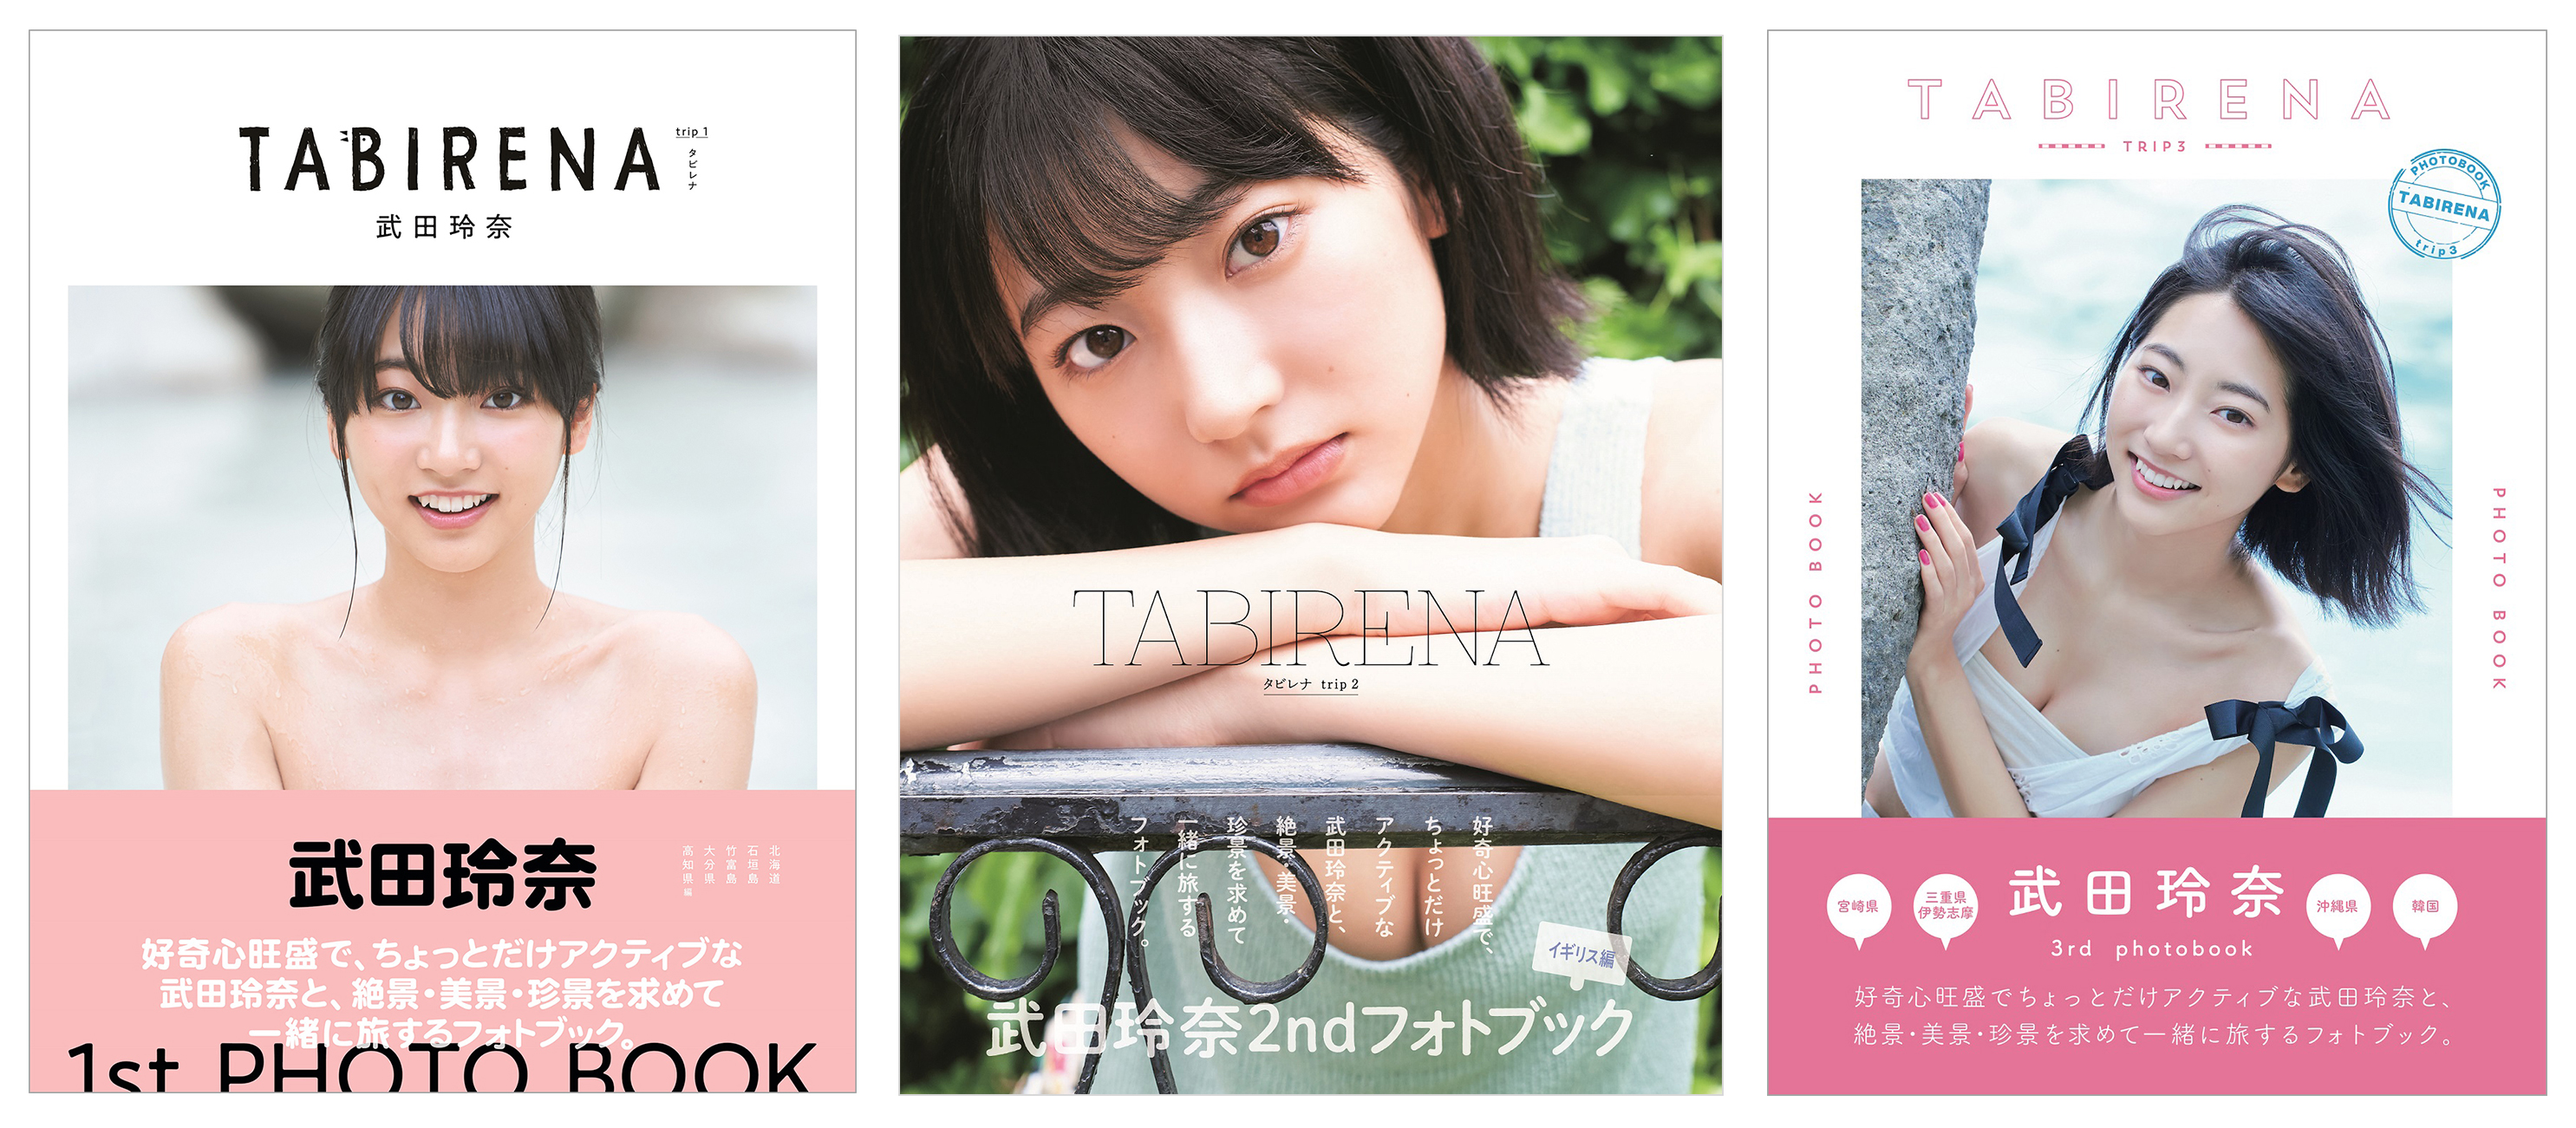 武 玲奈フォトブック タビレナ シリーズが電子書籍で発売 株式会社東京ニュース通信社のプレスリリース